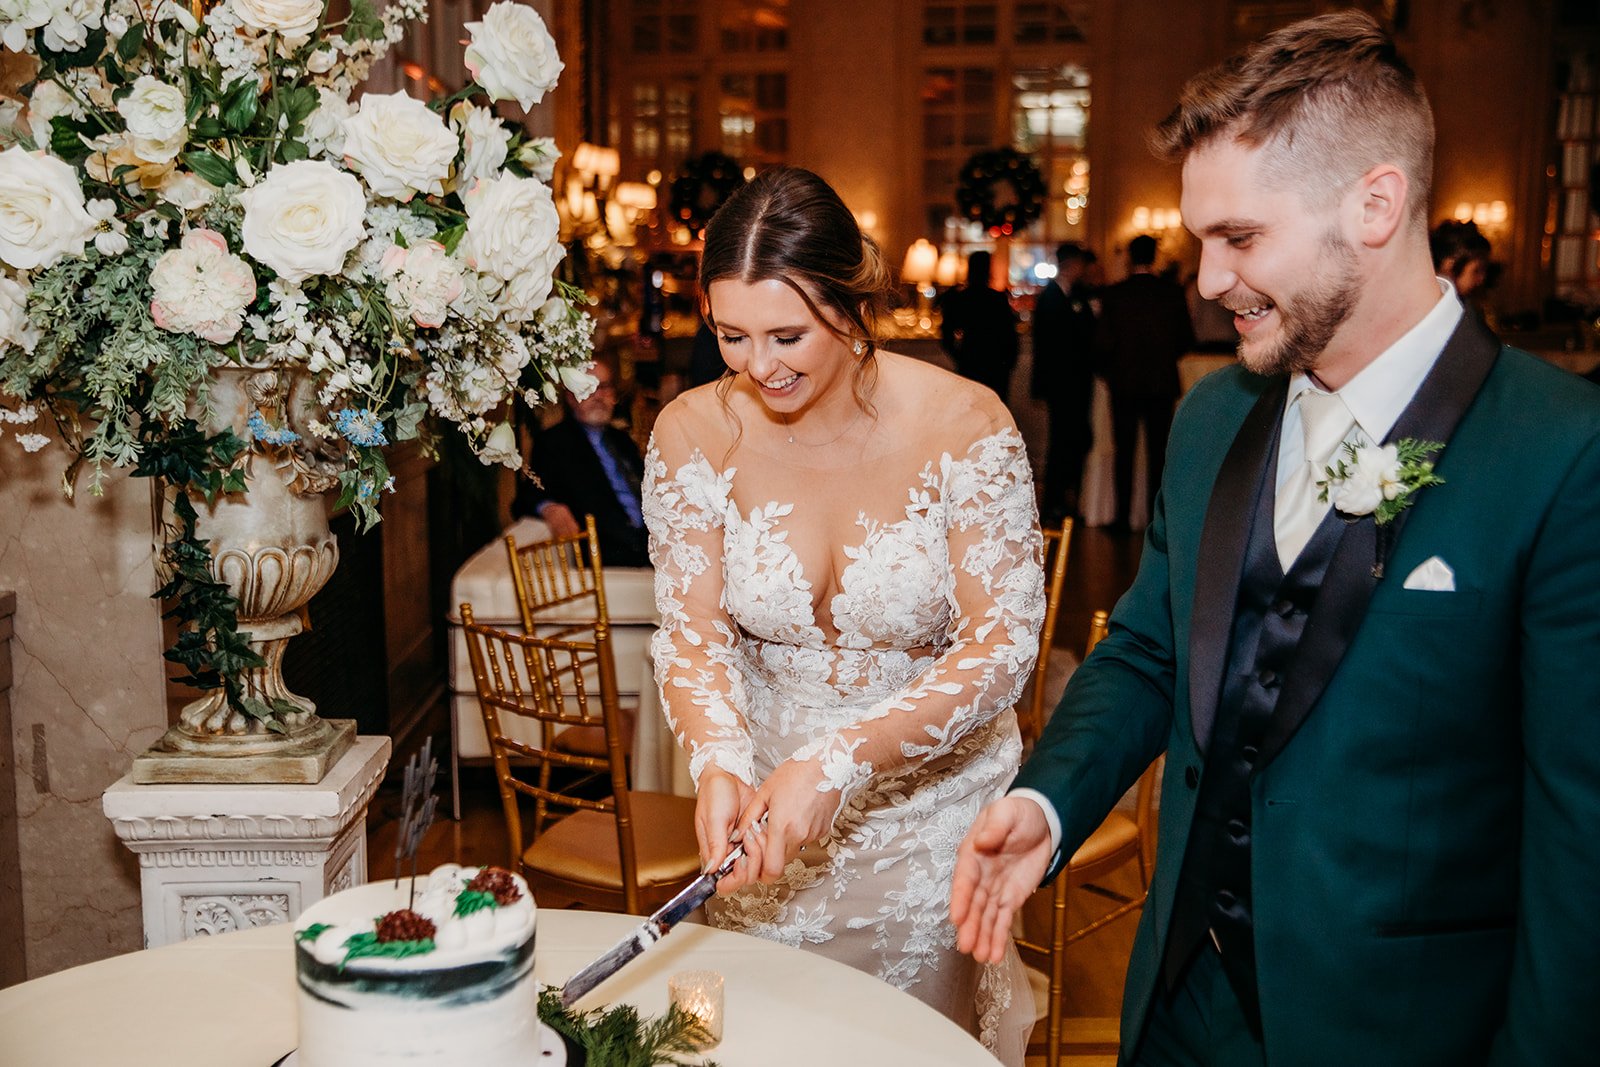 newlyweds serve wedding cake during Troy NY wedding reception